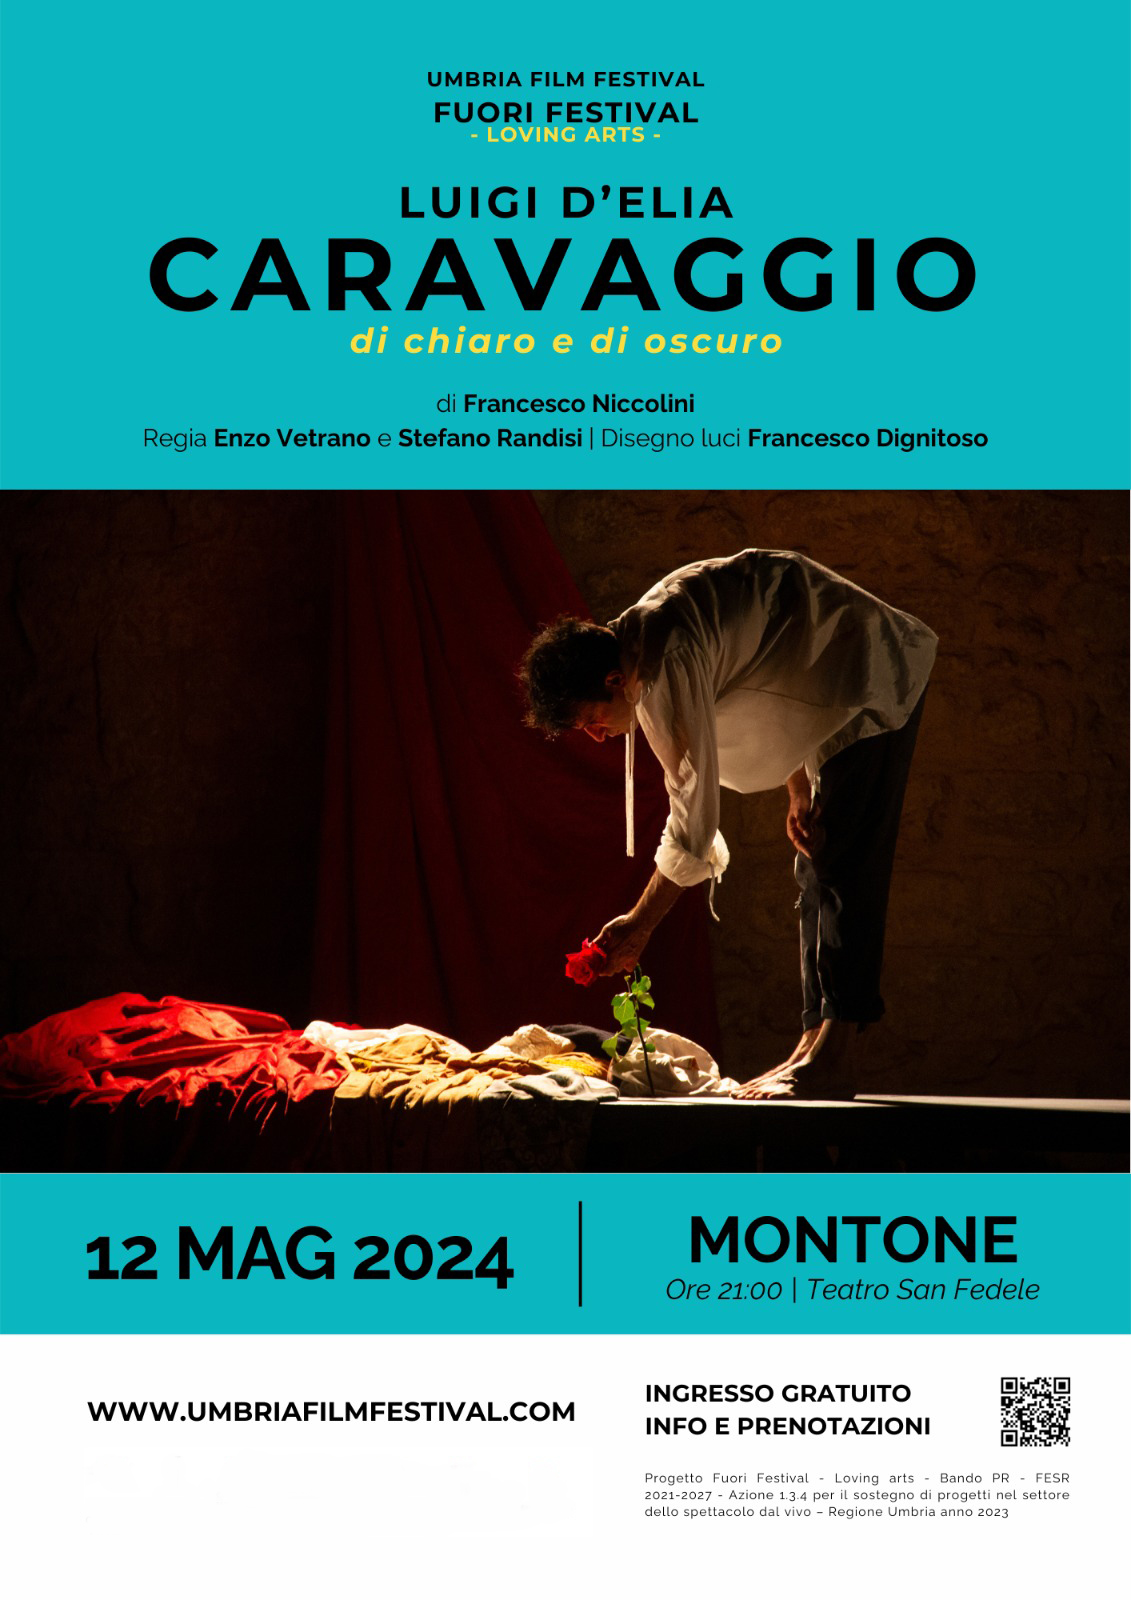  Montone – Al teatro San Fedele lo spettacolo “Caravaggio, di chiaro e di oscuro”